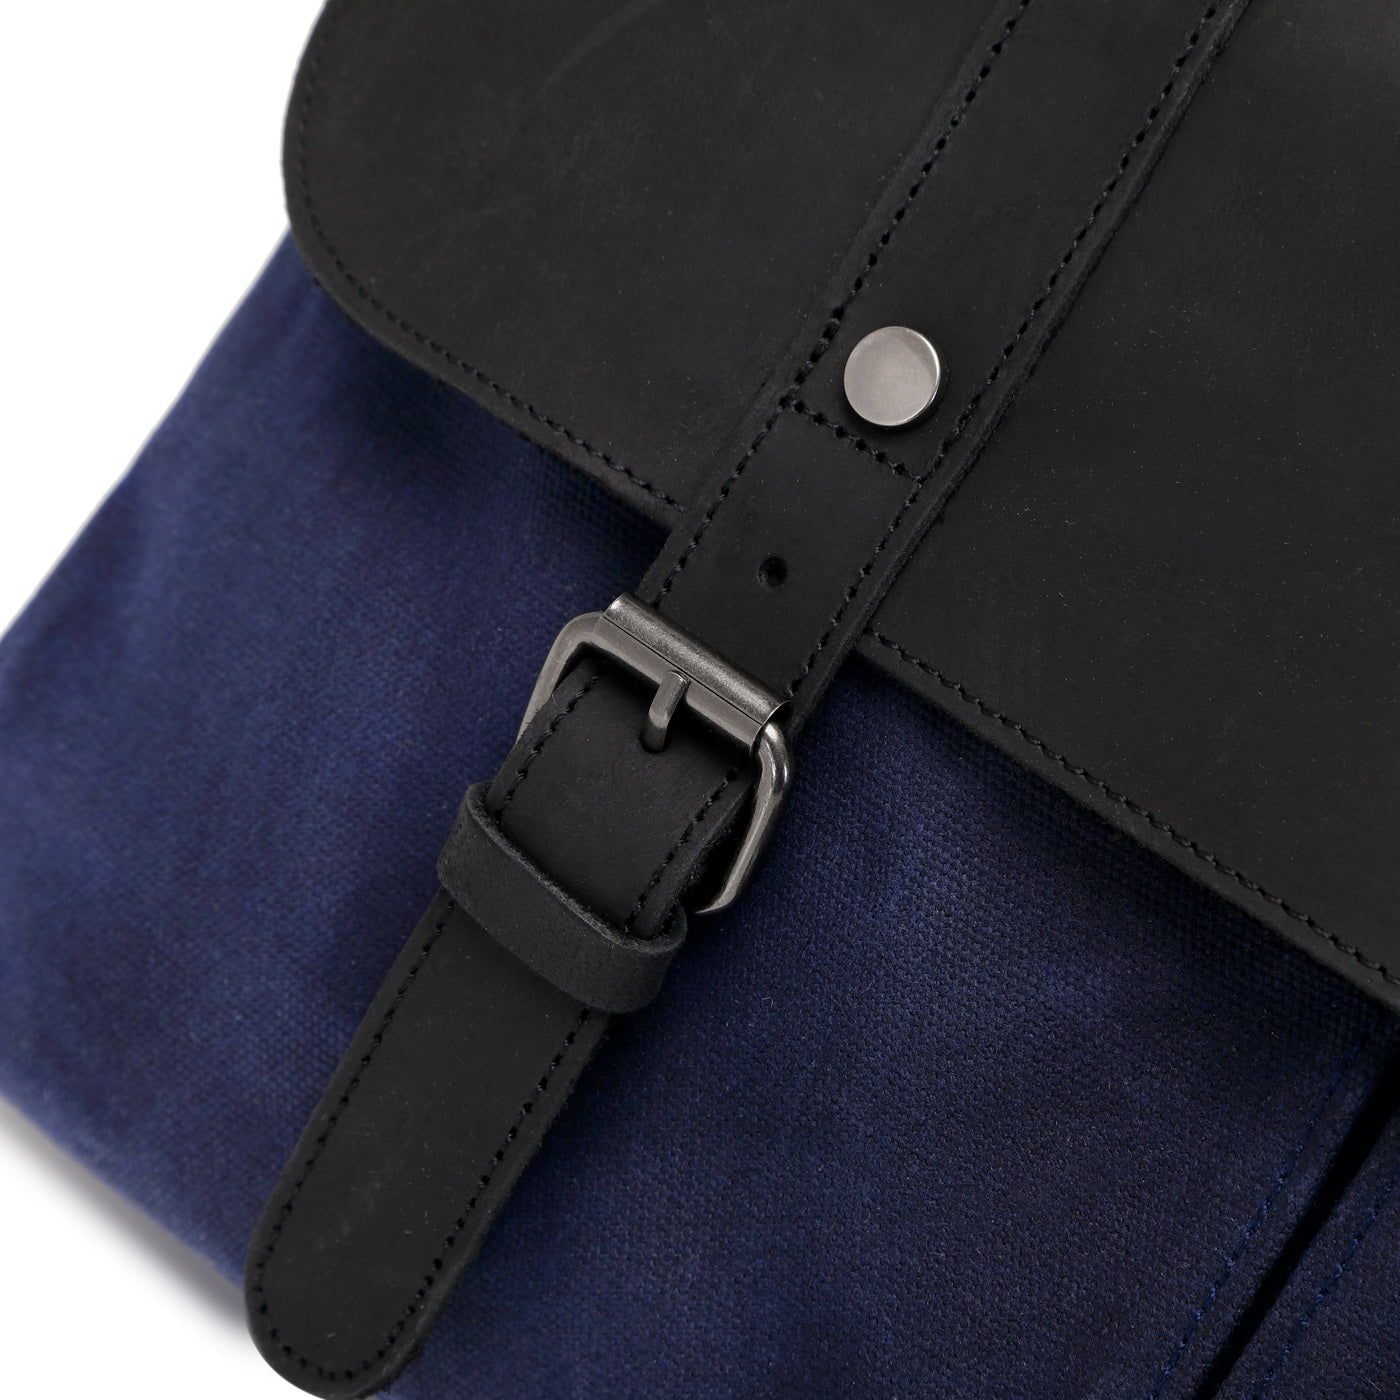 MICK - Sacoche en cuir véritable et toile enduite - Bleu